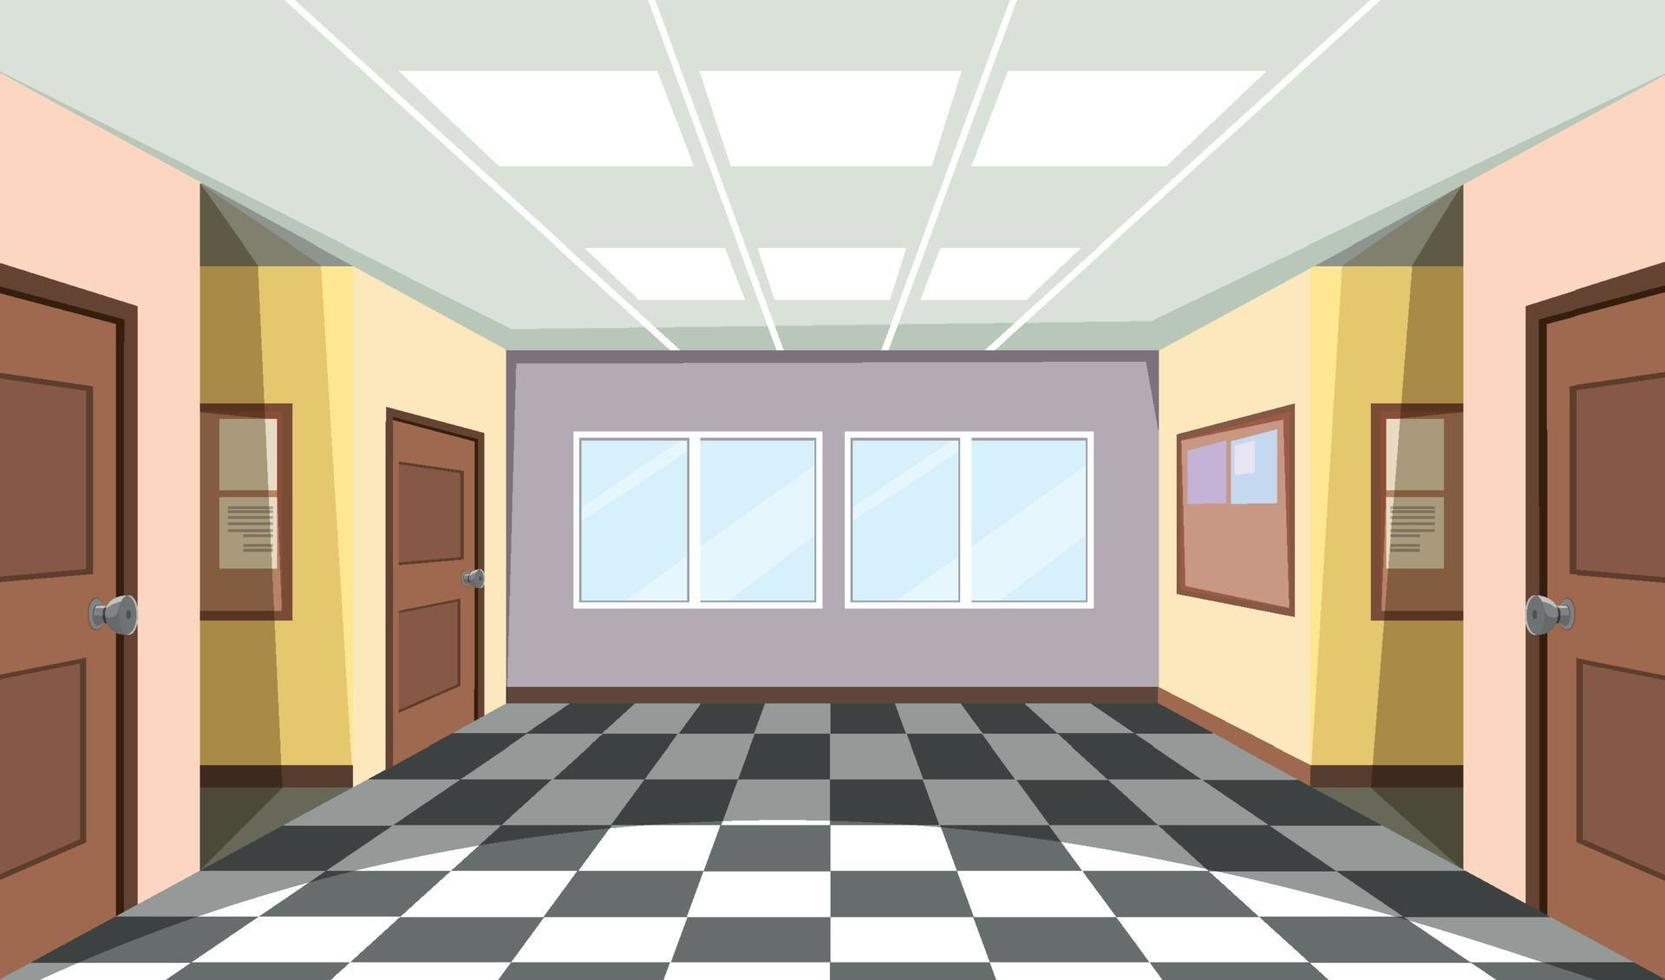 Empty room interior design vector